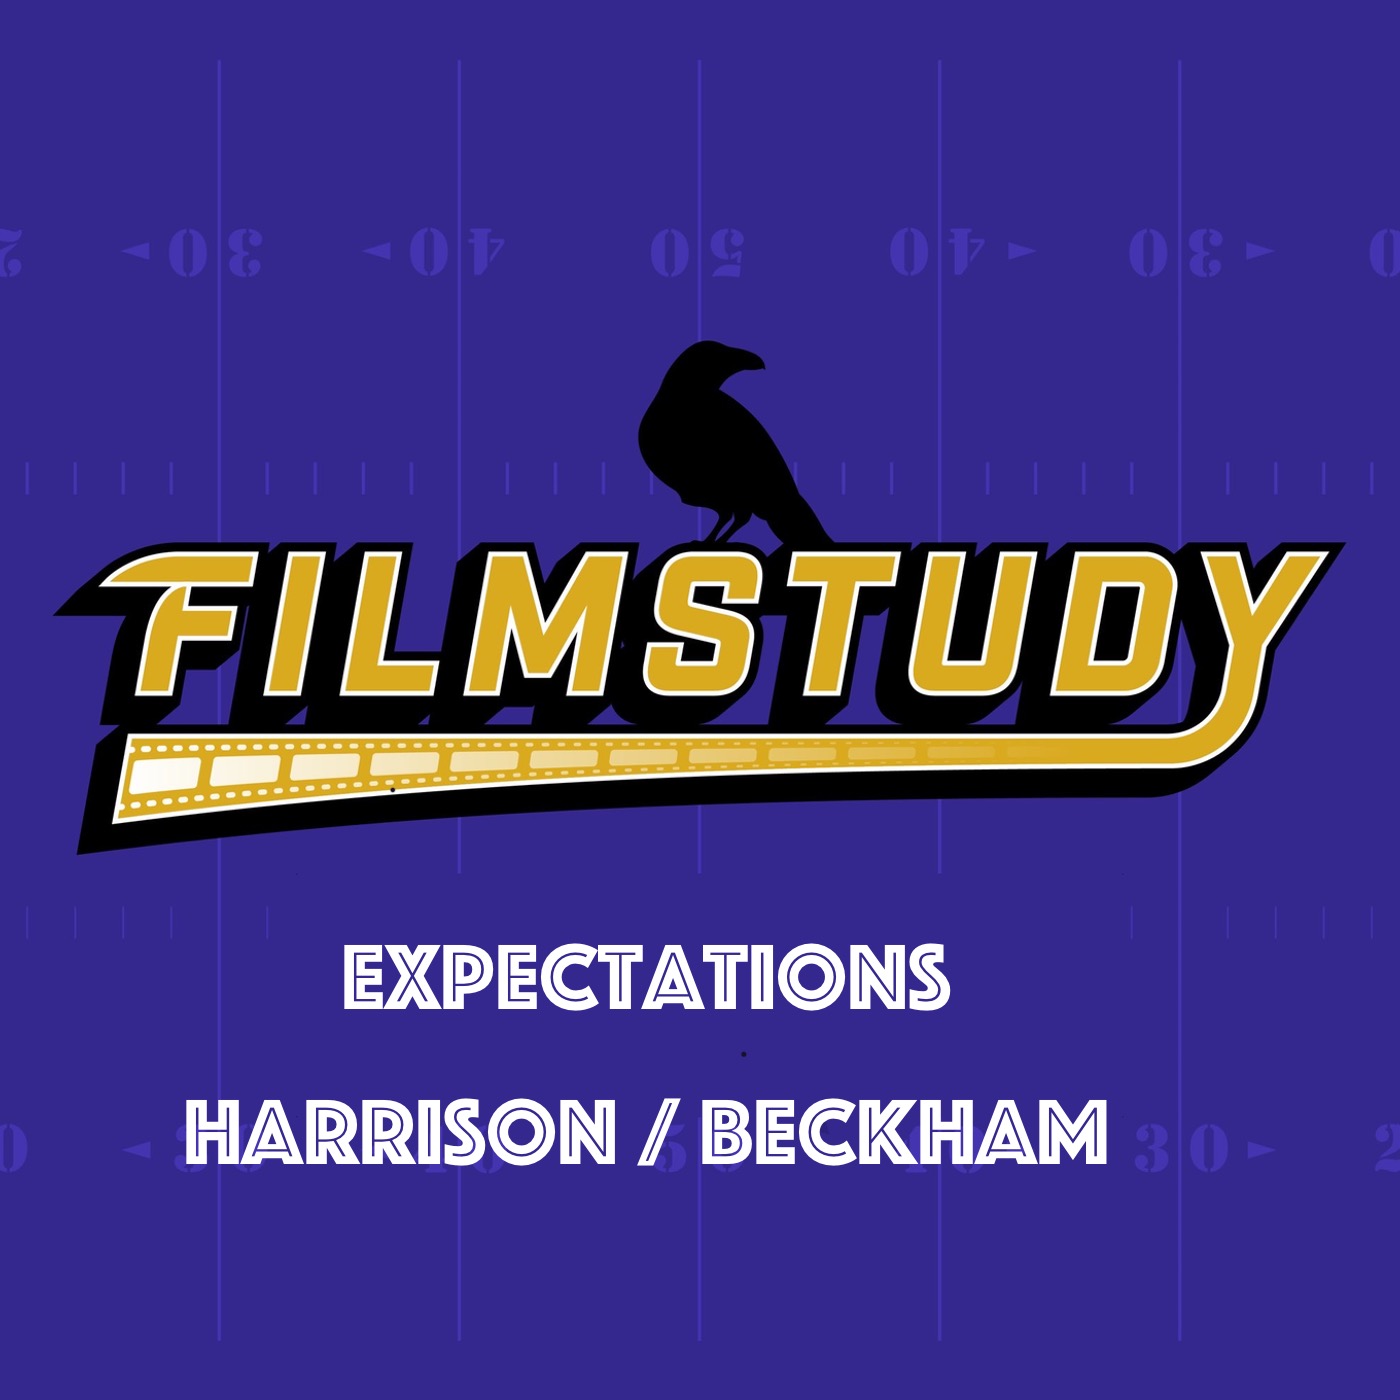 Expectations : Harrison / Beckham